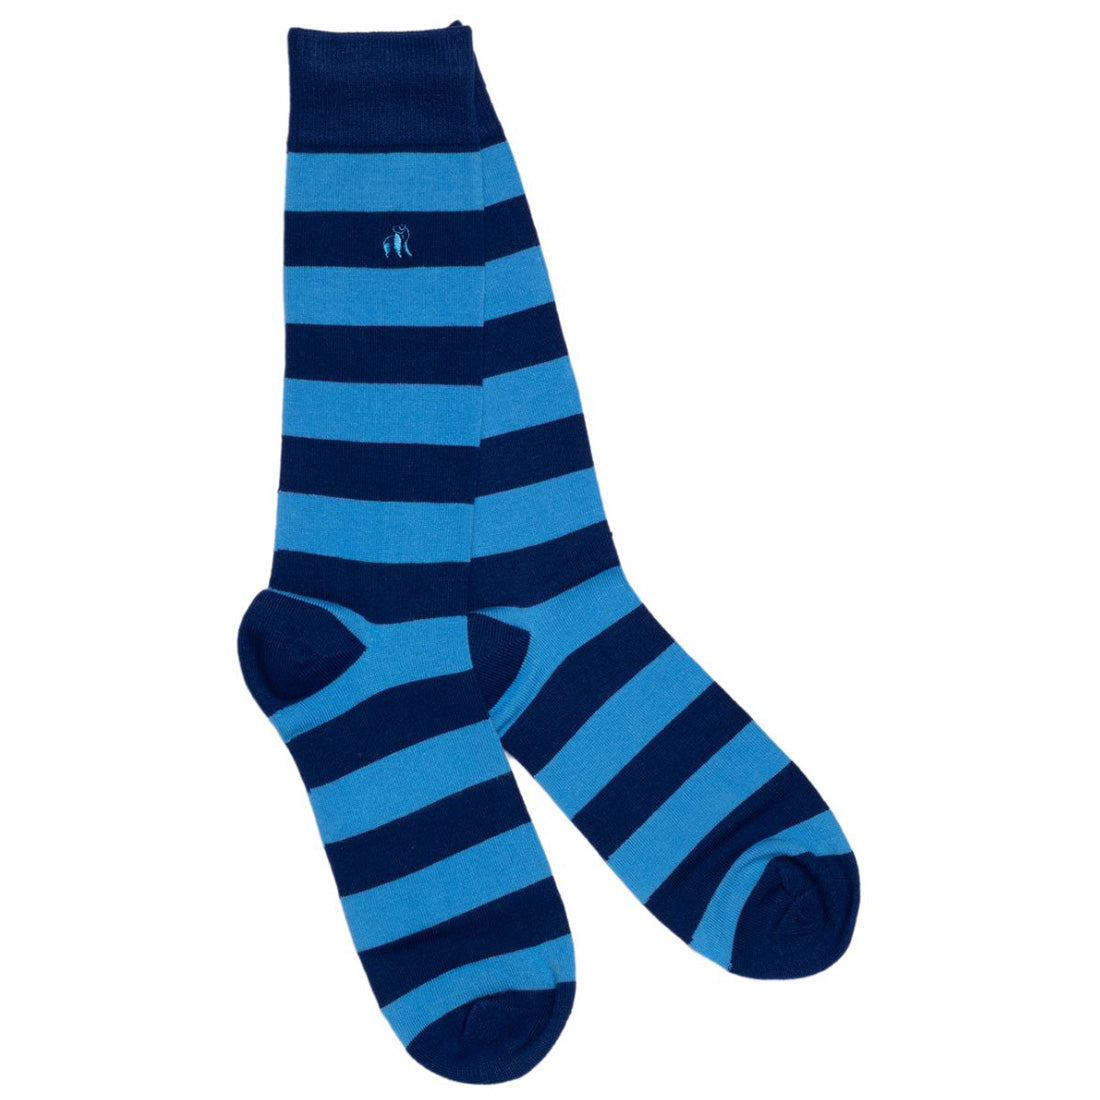 socks-sky-blue-striped-bamboo-socks-comfort-cuff-1.jpg